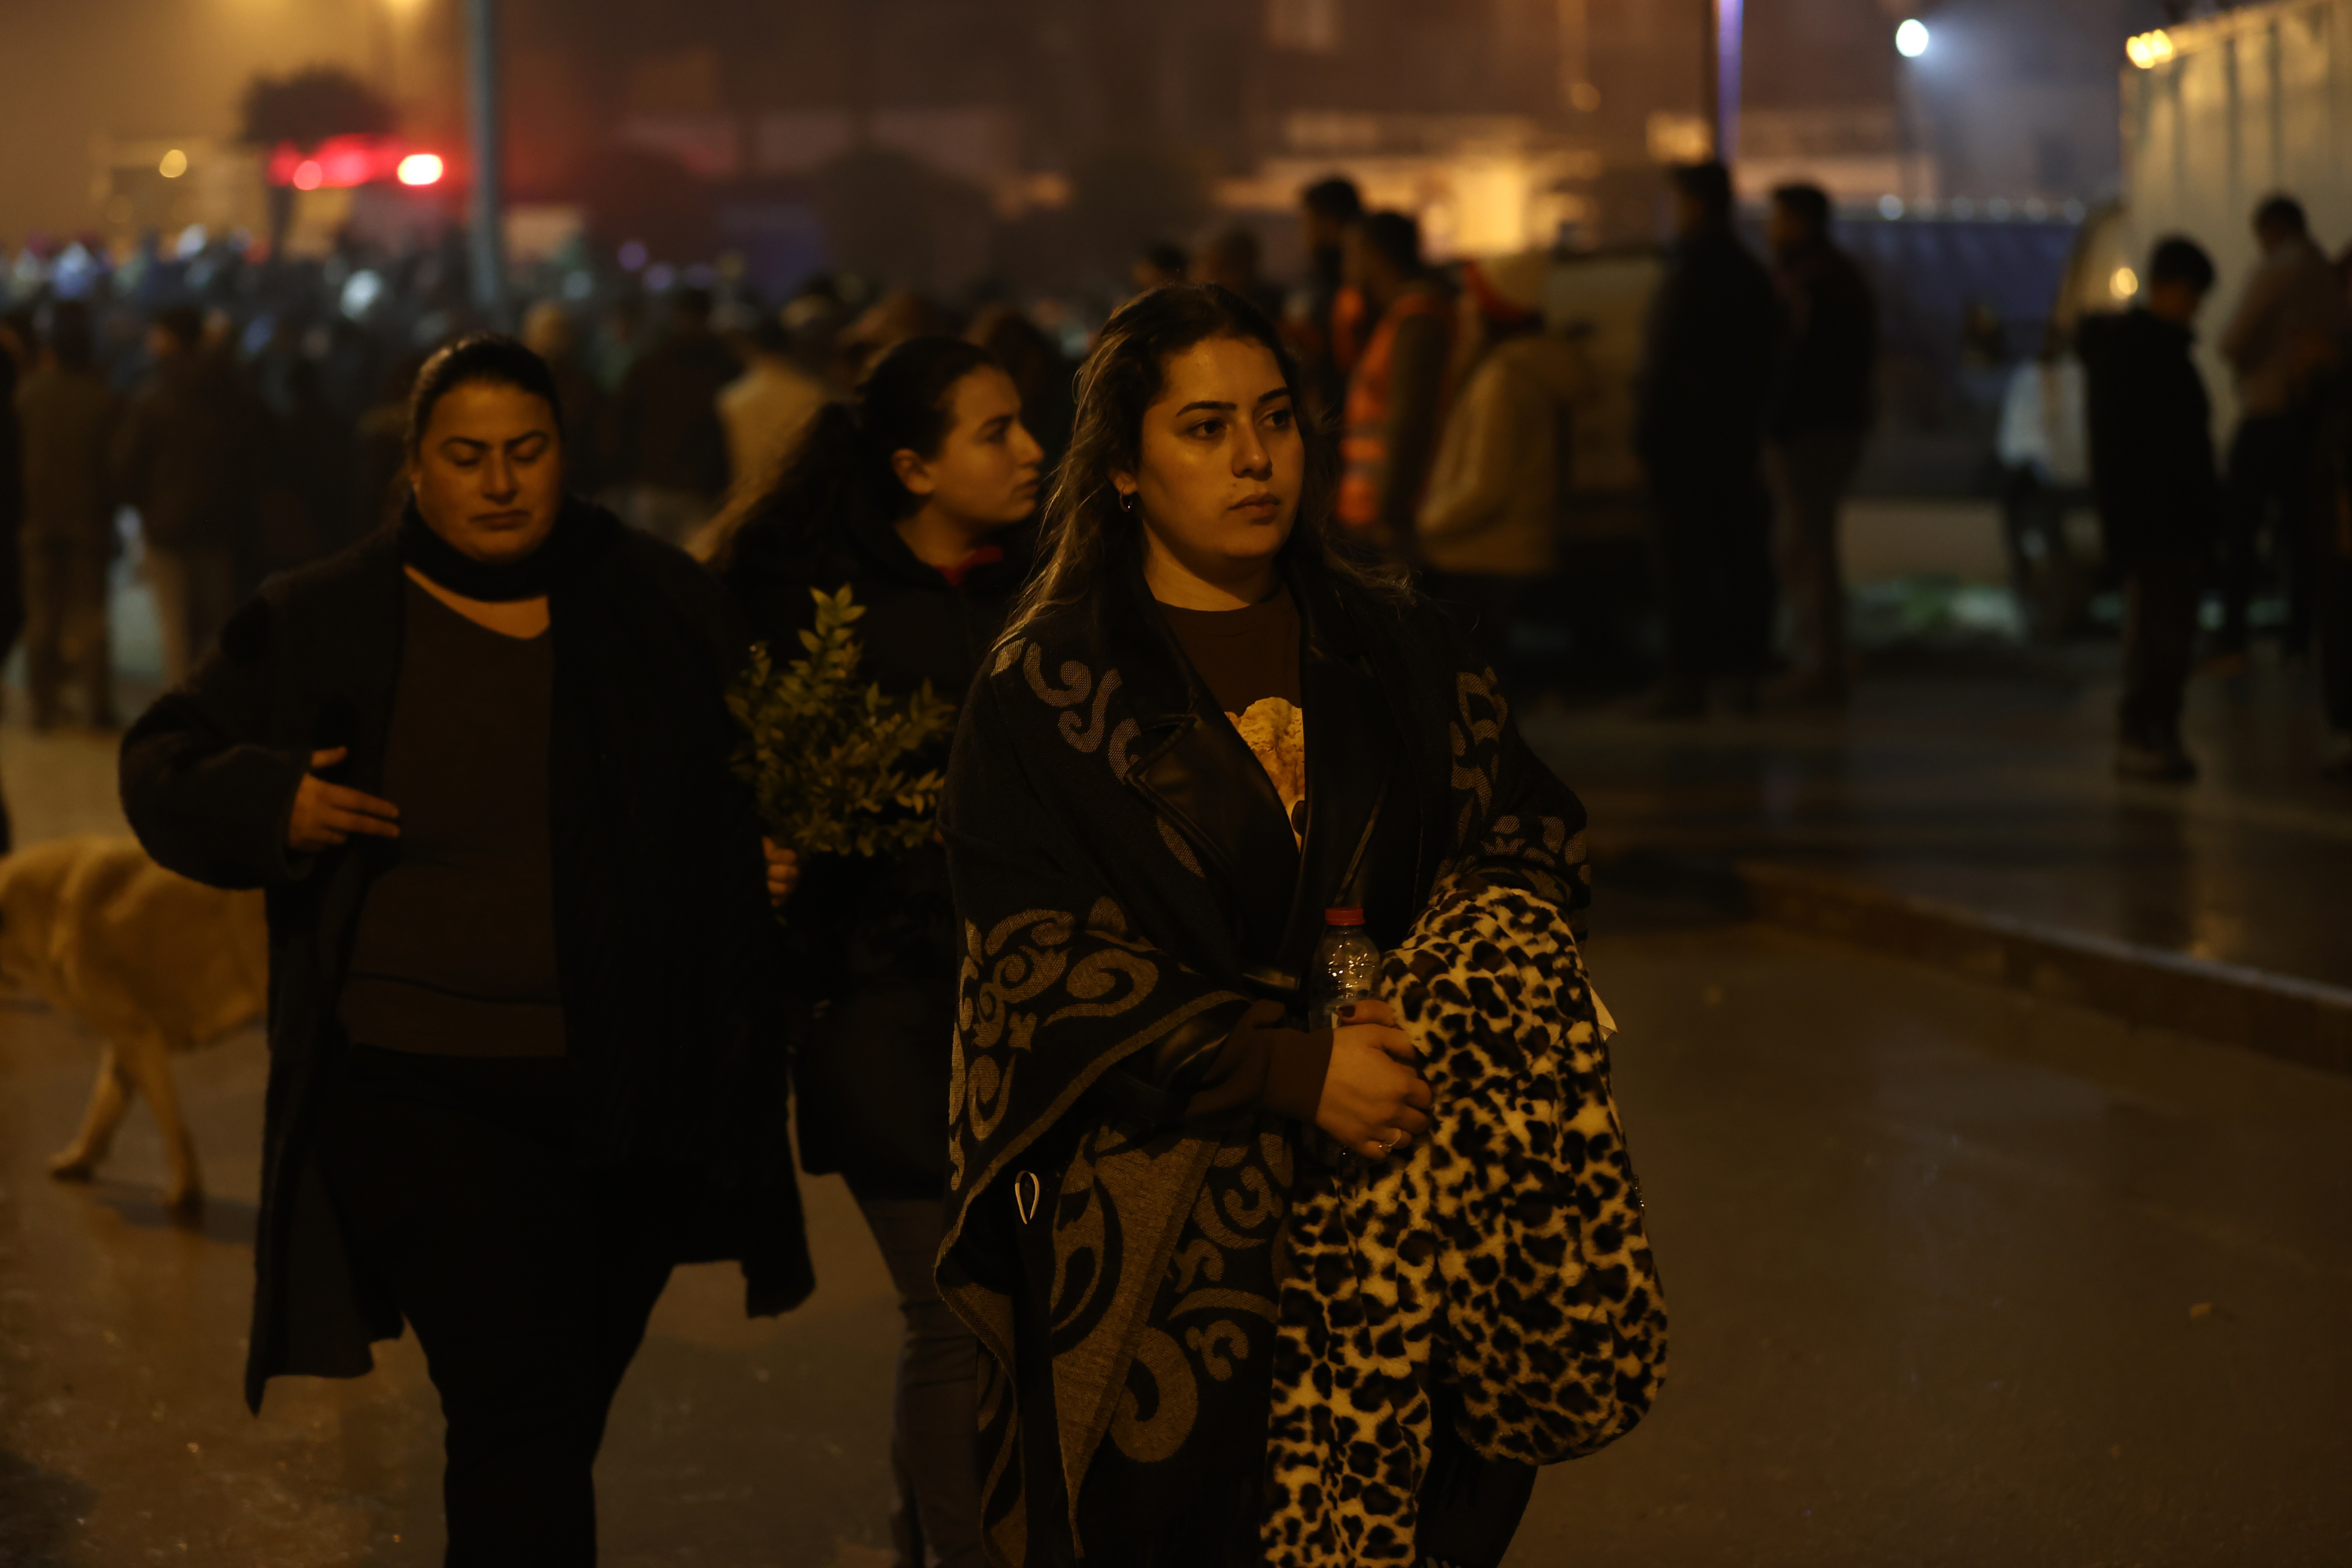 Türkiye'de saatler 04.17'de durdu | Binlerce insan, 6 Şubat depremlerinde kaybettikleri yakınlarını anıyor